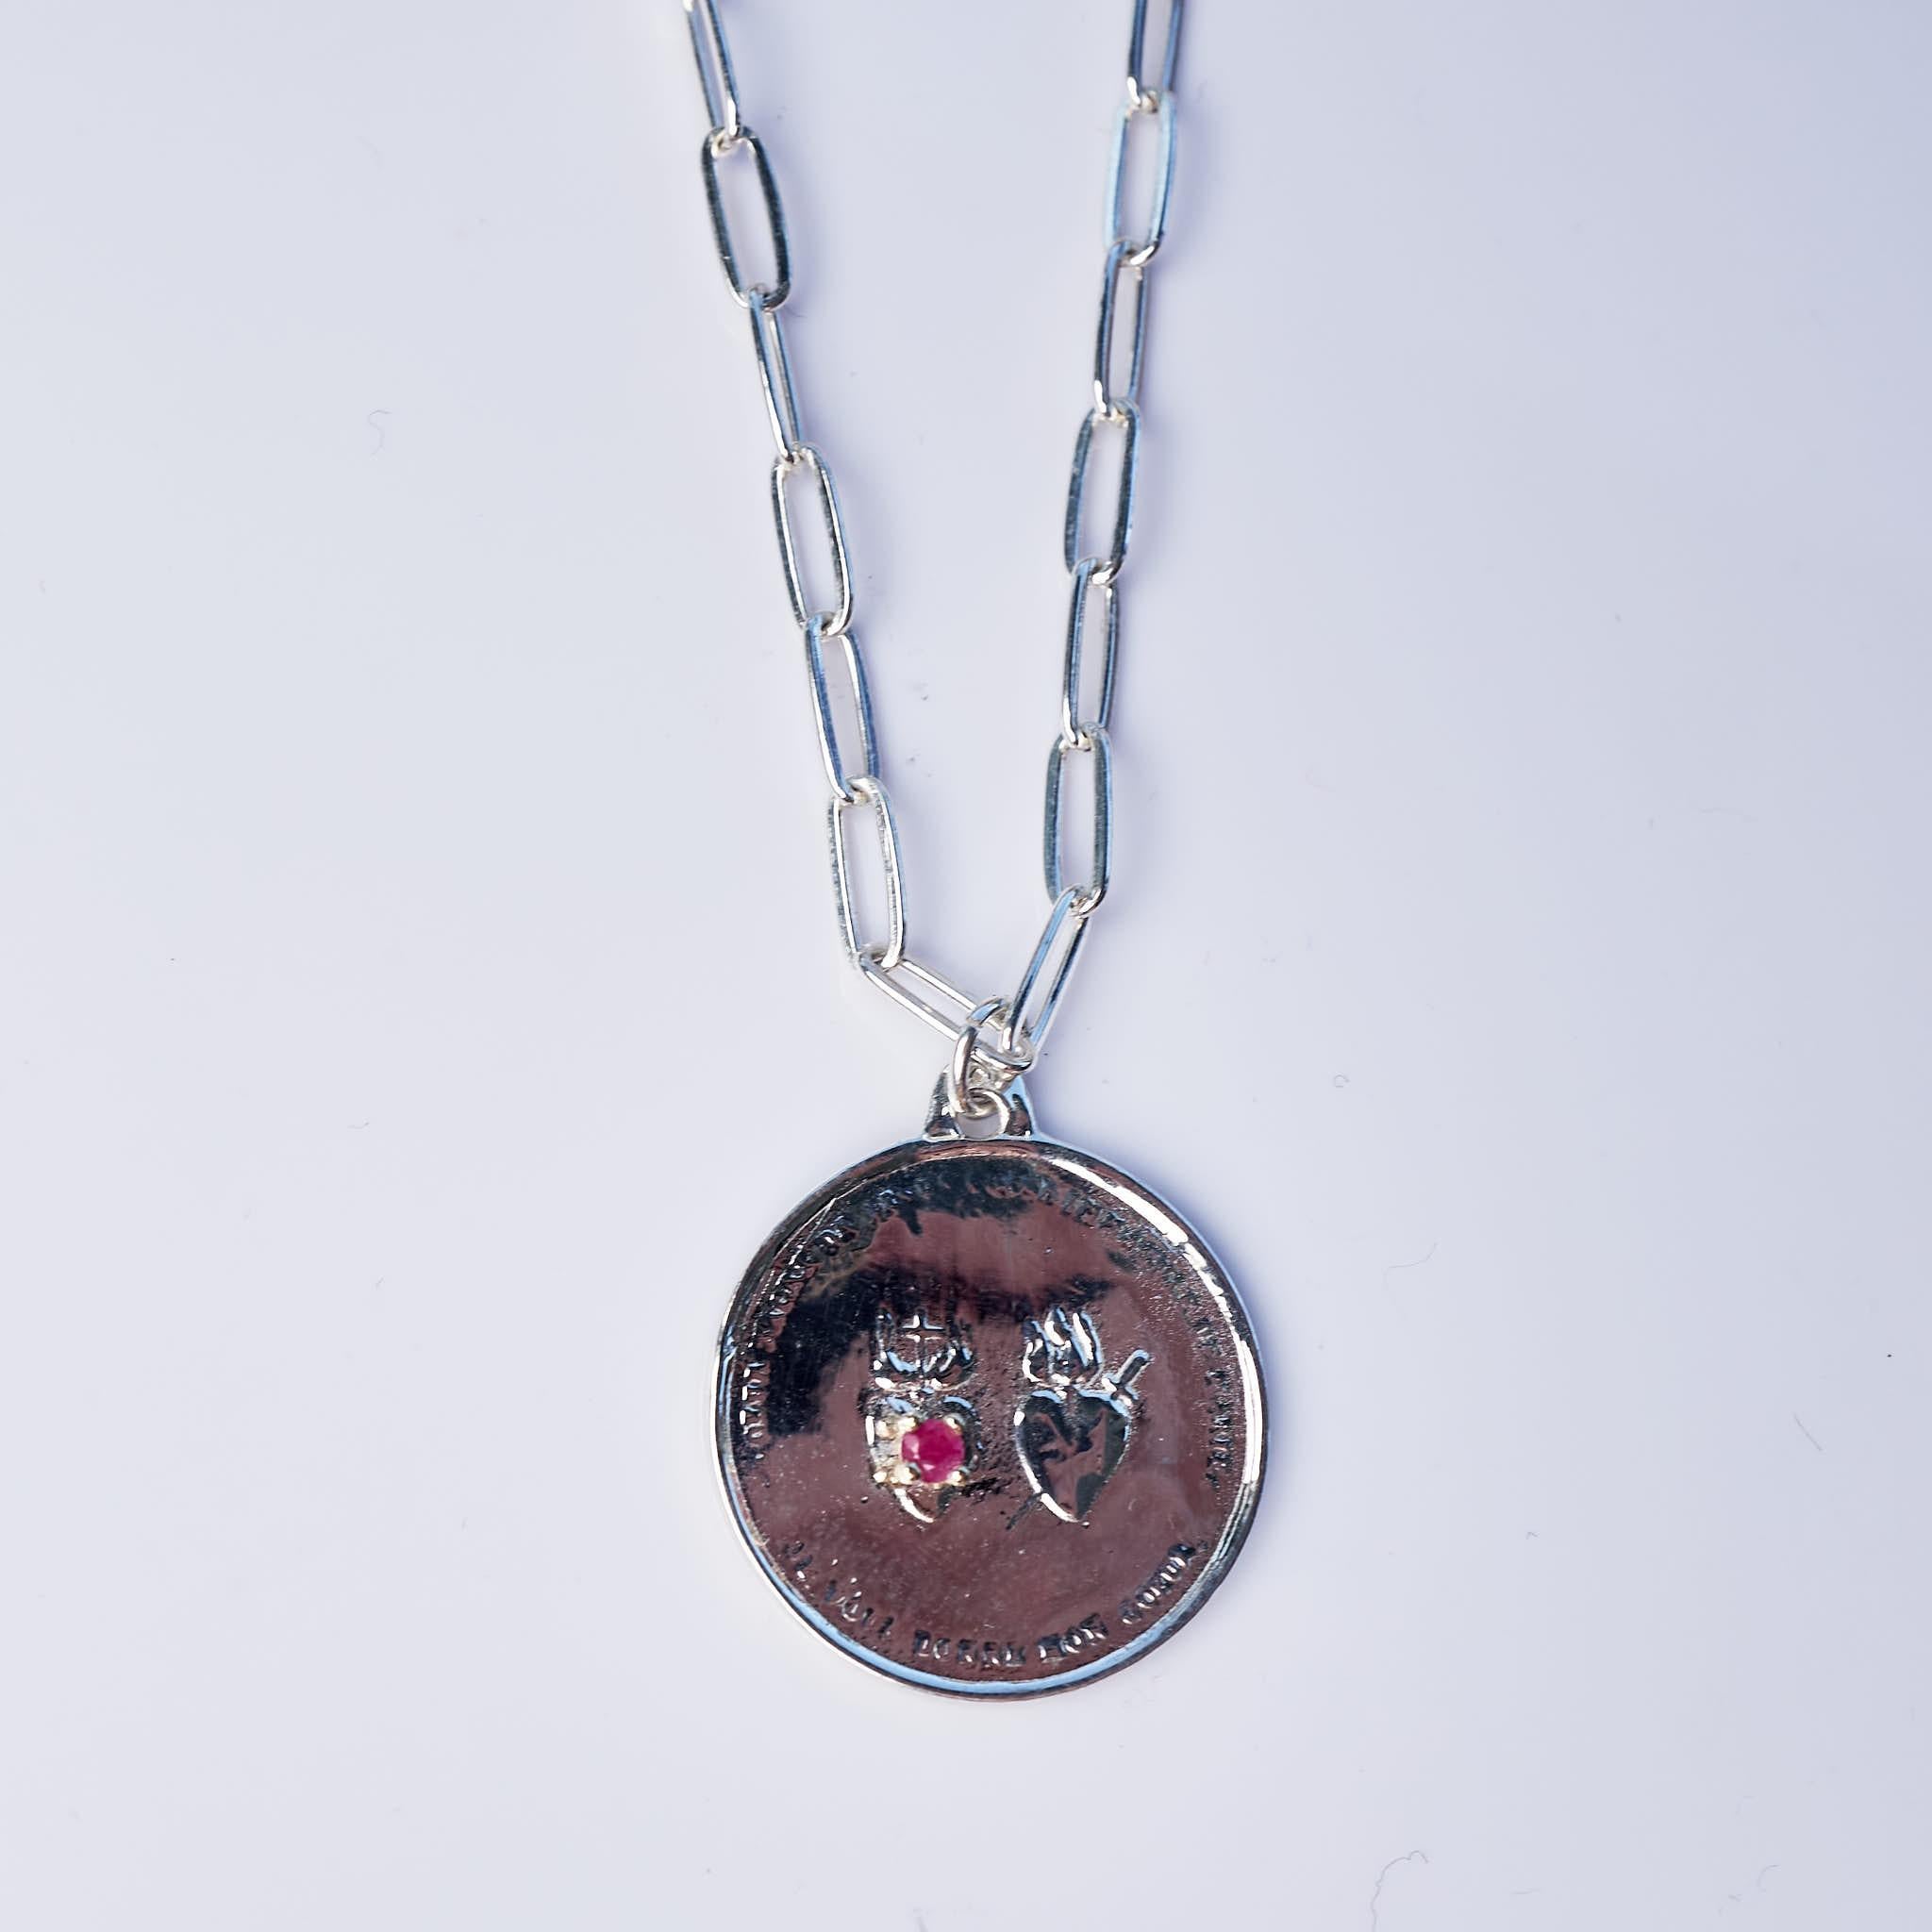 1 pcs Ruby Sacred Twin Heart Silver Medal Necklace on a Silver Chain J Dauphin. La chaîne peut être utilisée sur toute sa longueur ou plus courte. 
Cadeau idéal pour la Saint-Valentin.

Les symboles ou les médailles peuvent devenir un outil puissant